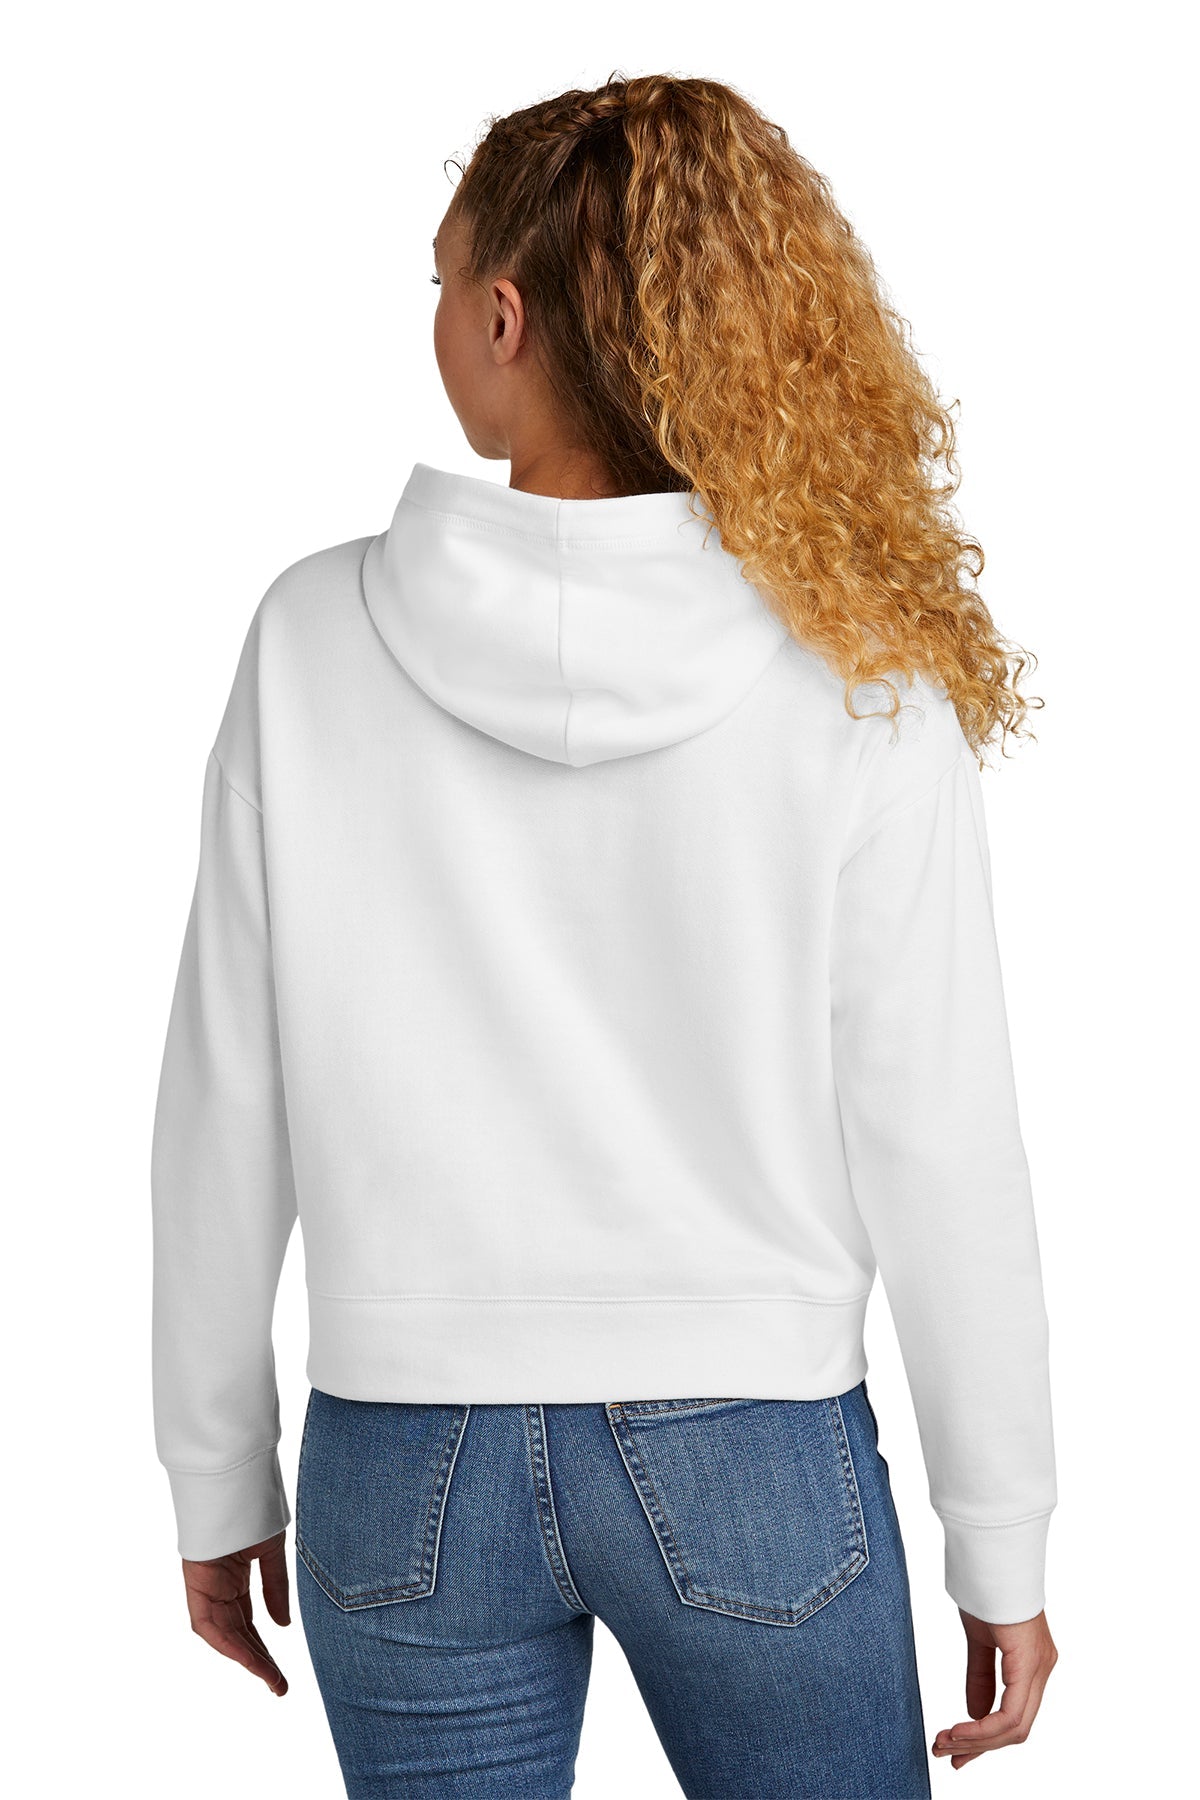 New Era Ladies Comeback Fleece Customized Hoodies, White